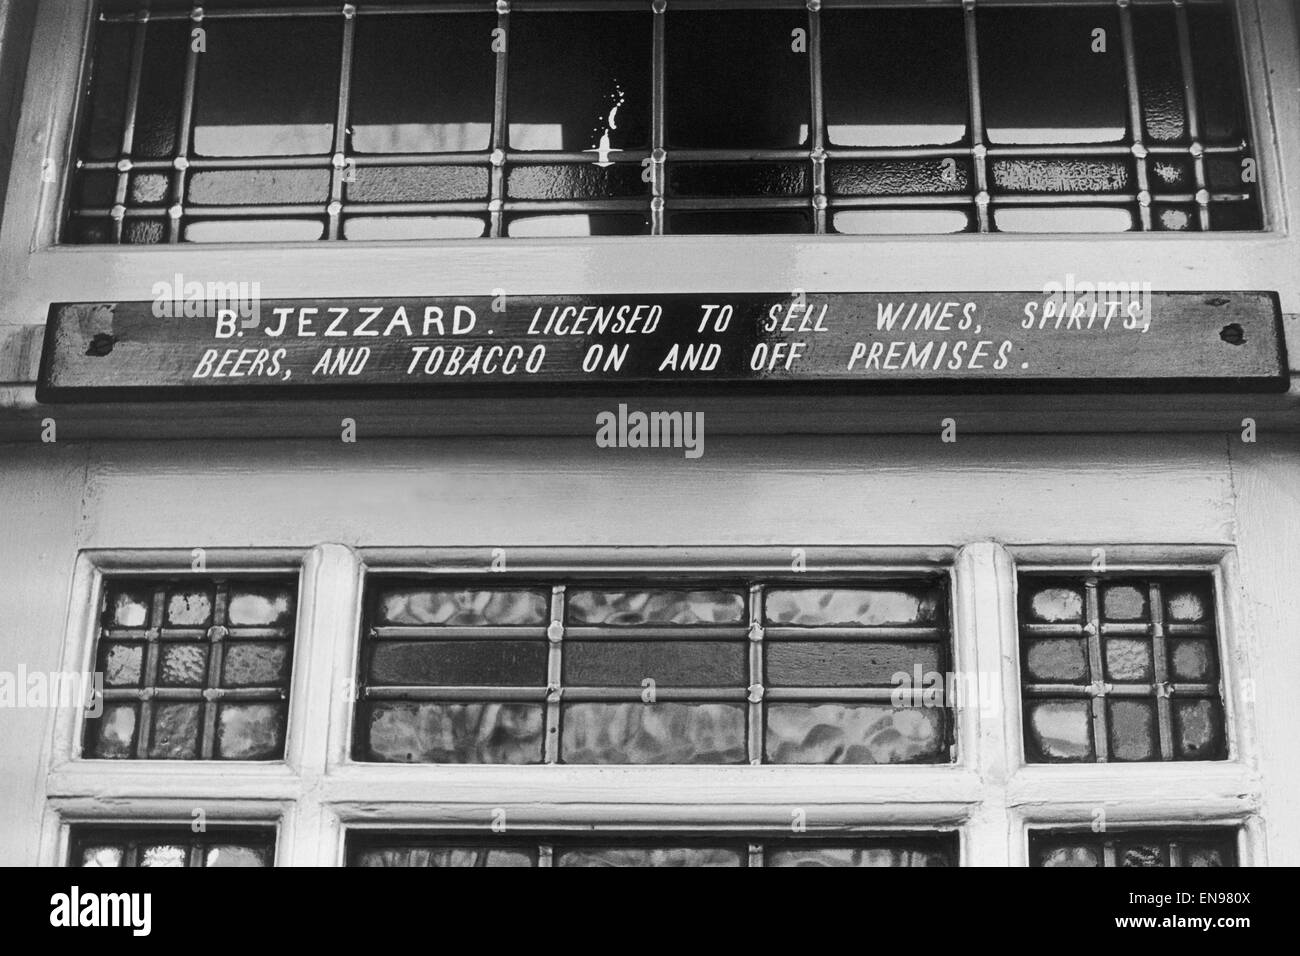 Abbildung der Lizenz über der Tür in The Thatched House Pub, Dalling Road, W6, London, benennen von Bedford Jezzard, der Ex - Fulham-Fußballspieler, es lief nach seiner Fußballkarriere zu Ende war. 7. Dezember 1964. Stockfoto